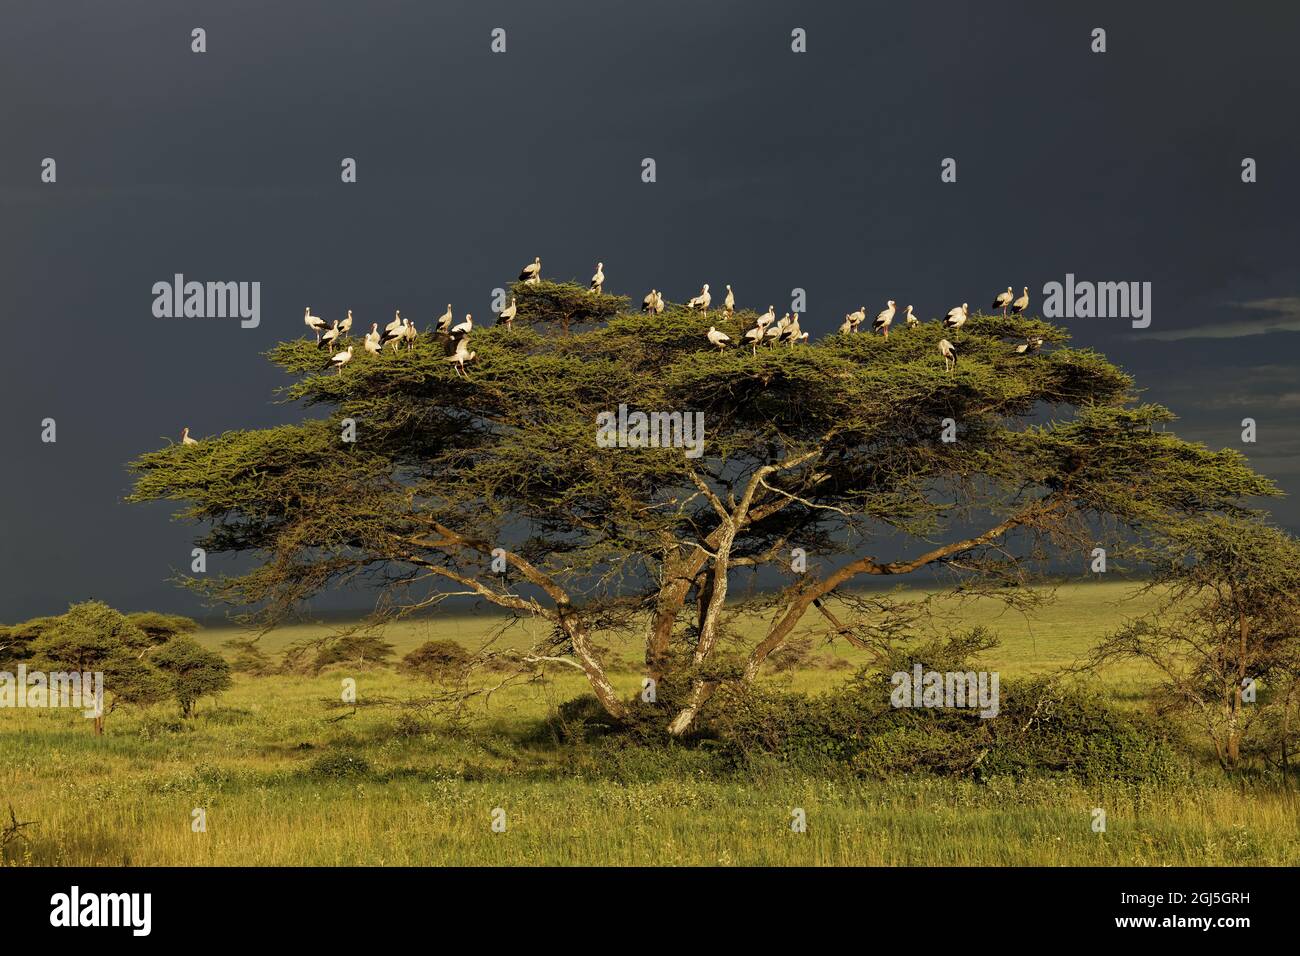 Cicogne bianche in alberi e nuvole scure, cicogna europea, Parco Nazionale Serengeti, Tanzania, Africa Foto Stock